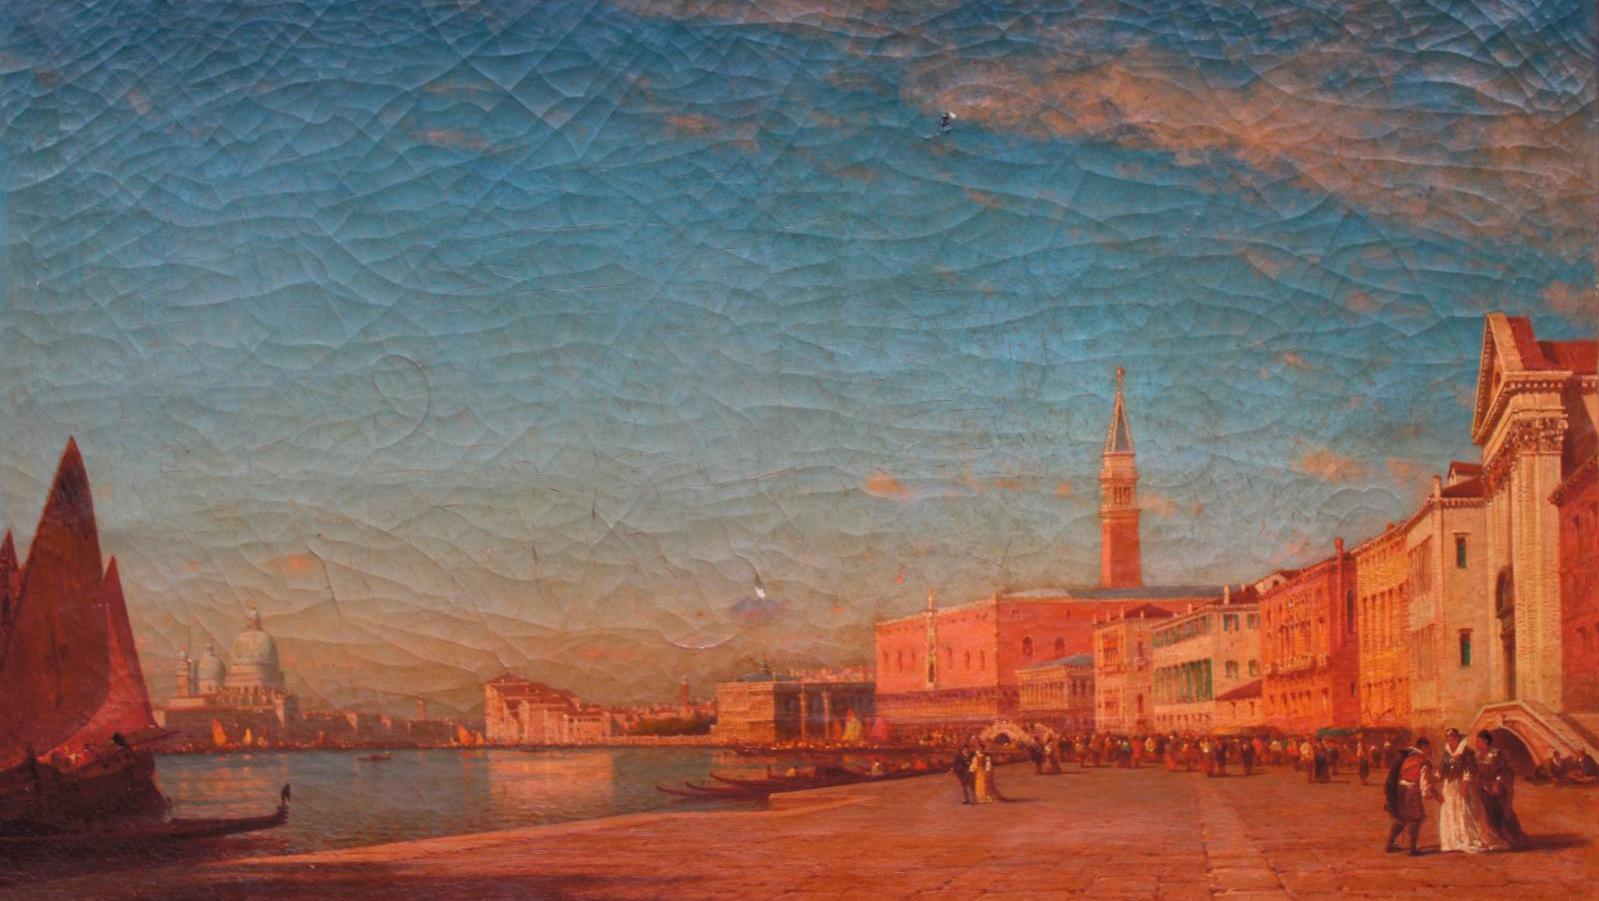 Félix Ziem (1821-1911) Venise, le Grand Canal, huile sur toile signée, 74 x 124,5 cm.... Félix Ziem à Venise